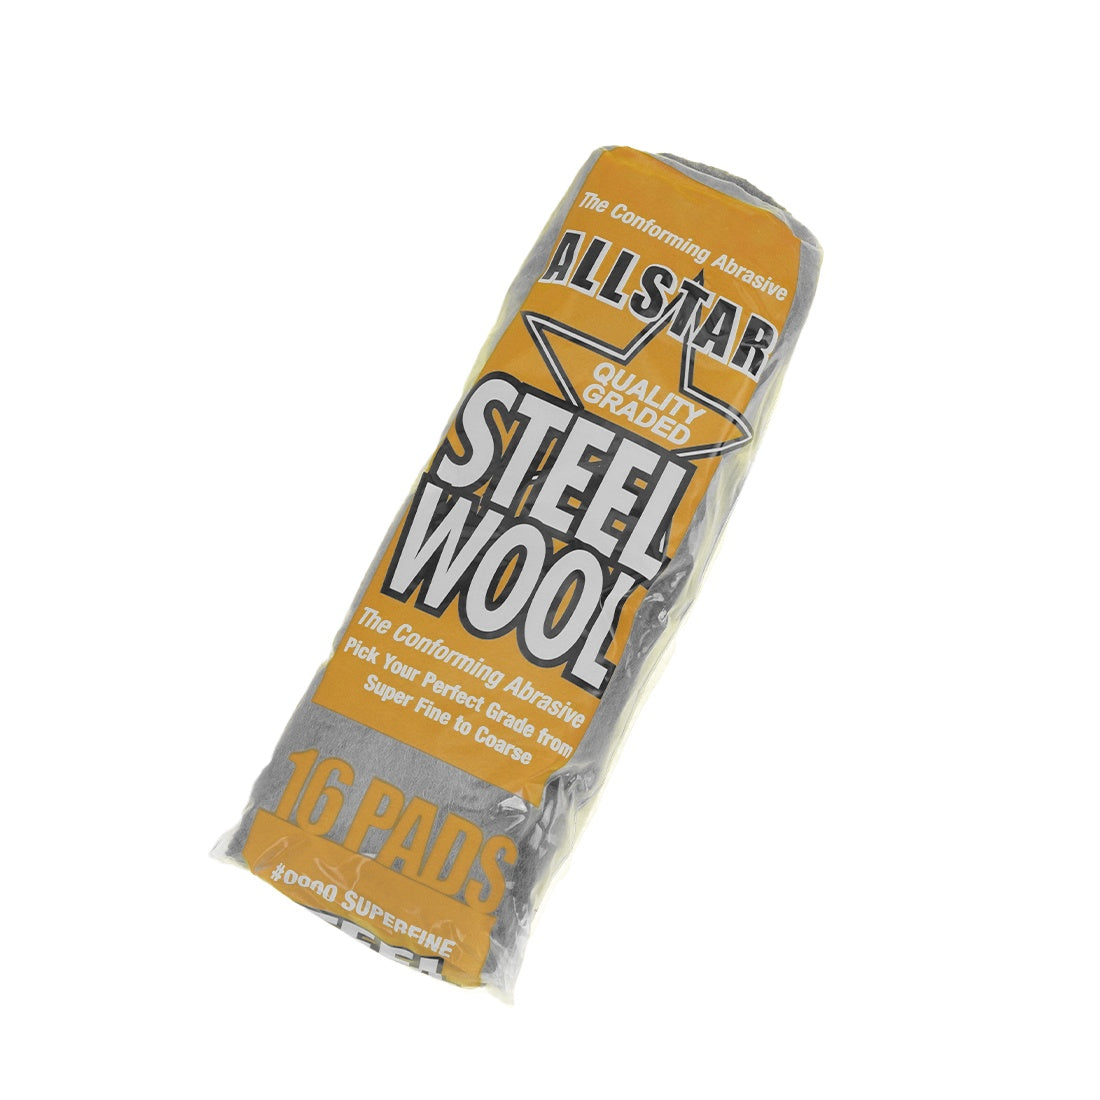 XERO Steel Wool - 16 Piece Bag Packaging Tilted View